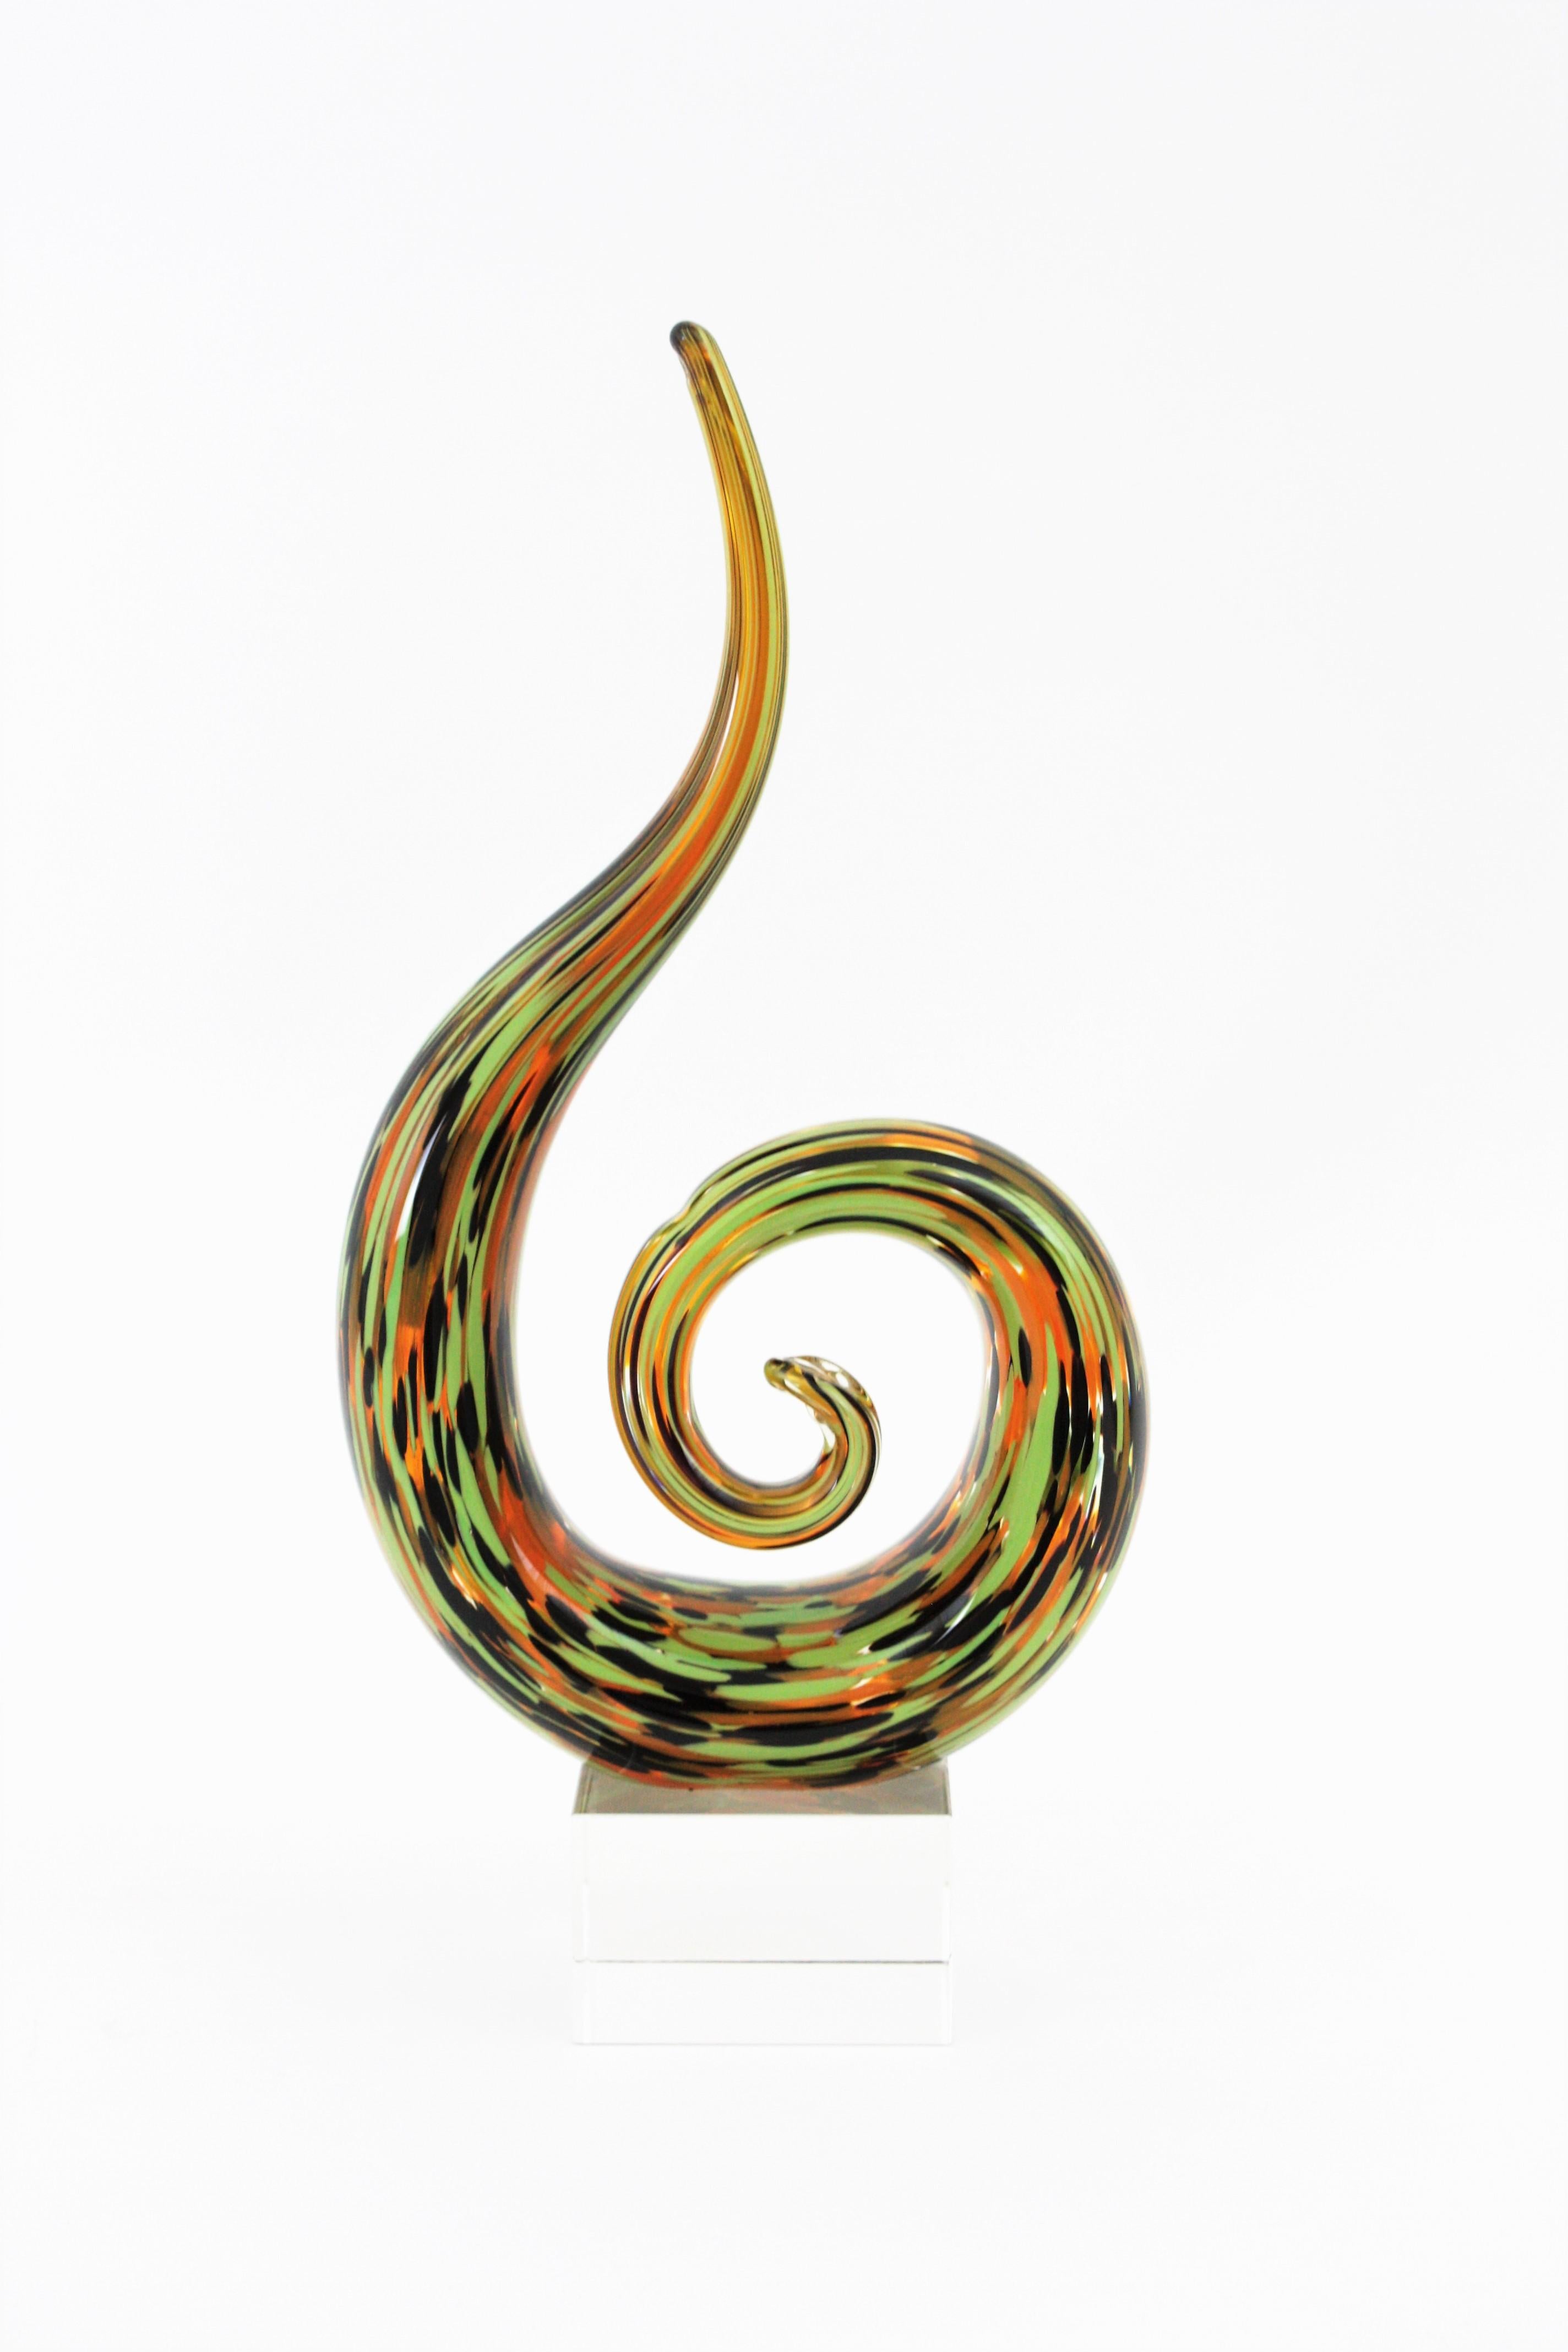 Magnifique sculpture abstraite en verre soufflé de Murano. Artiste inconnu. Italie, années 1960
Cette sculpture presse-papier en verre d'art présente un design accrocheur avec une forme en spirale reposant sur un piédestal cubique en verre